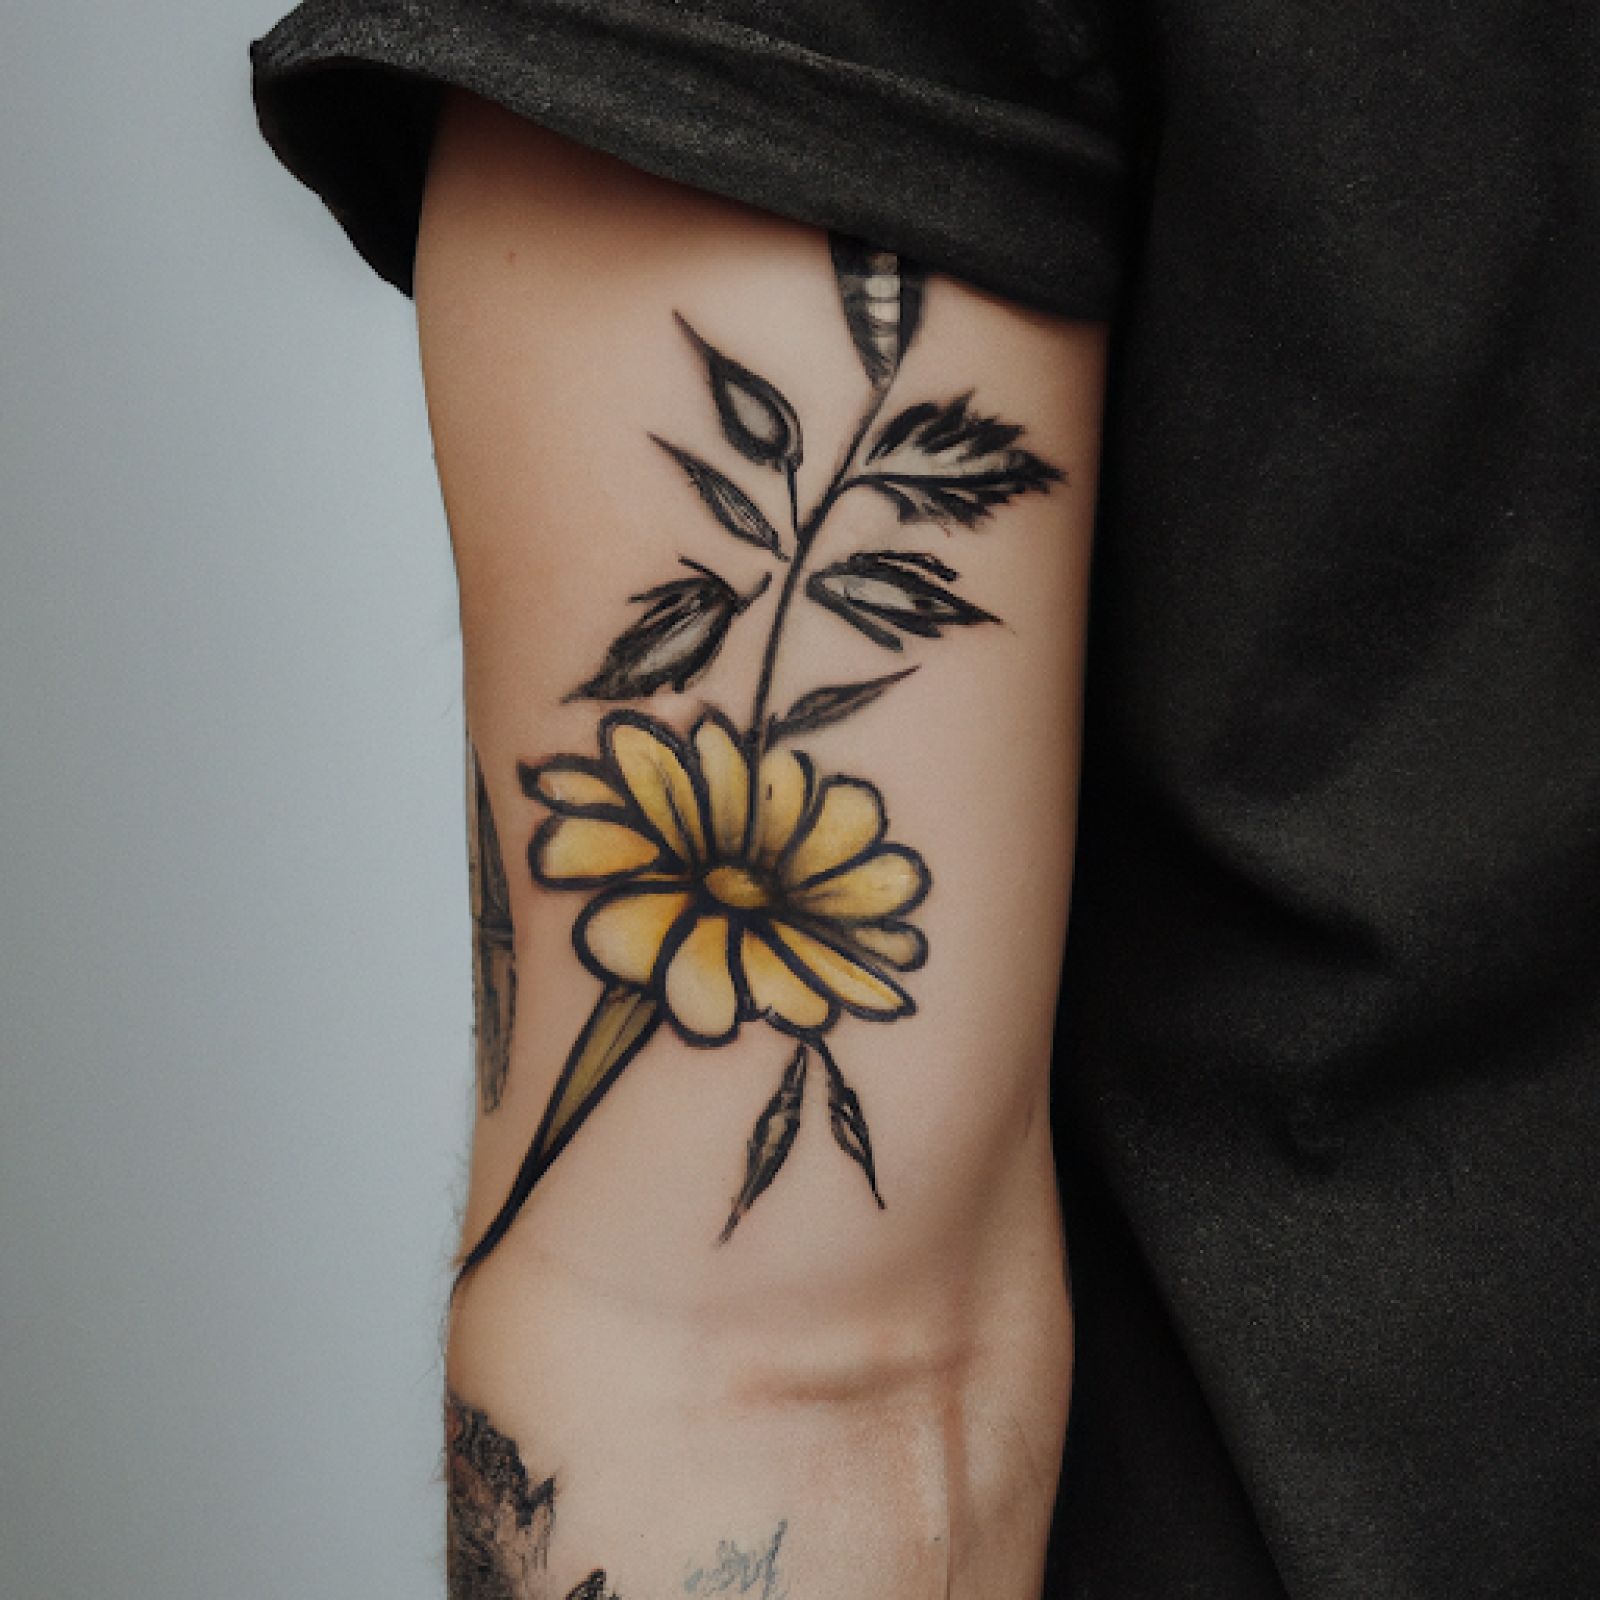 Flower tattoo on sleeve for men